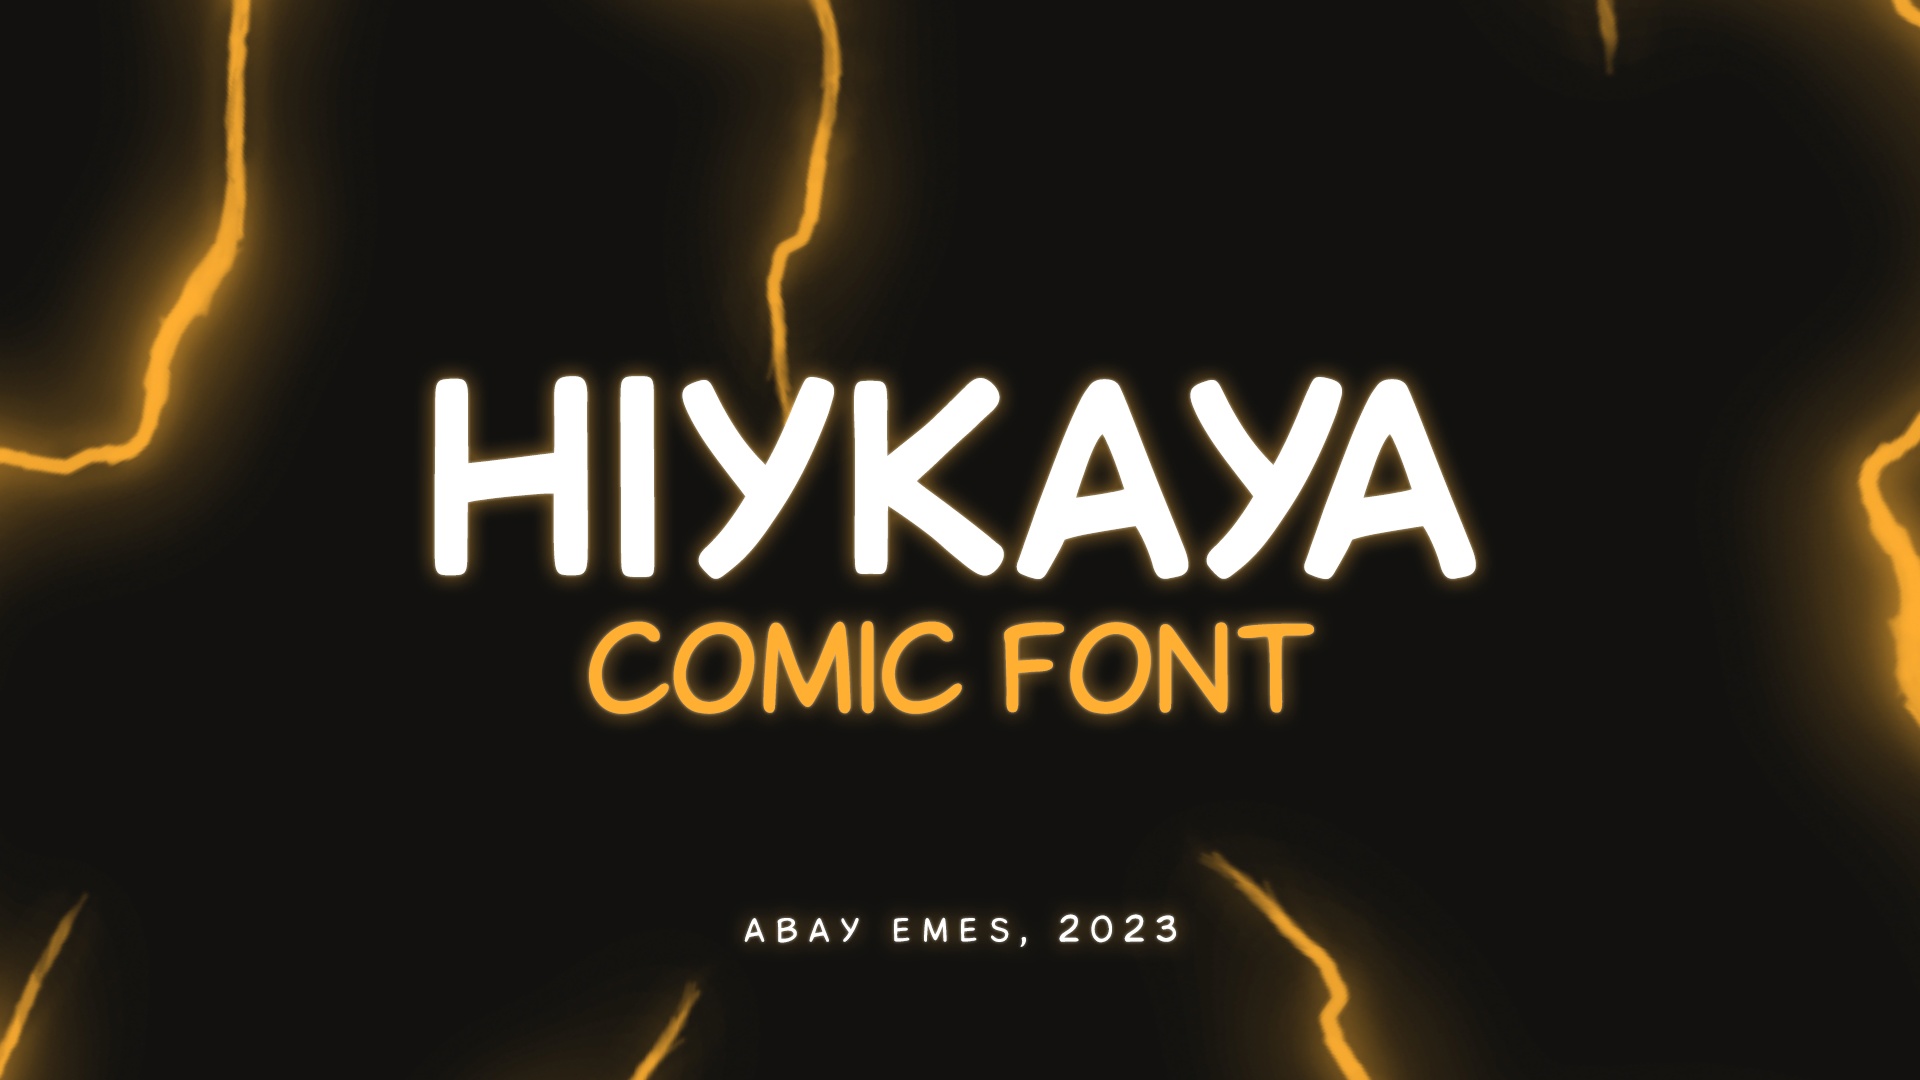 Beispiel einer Hiykaya Regular-Schriftart